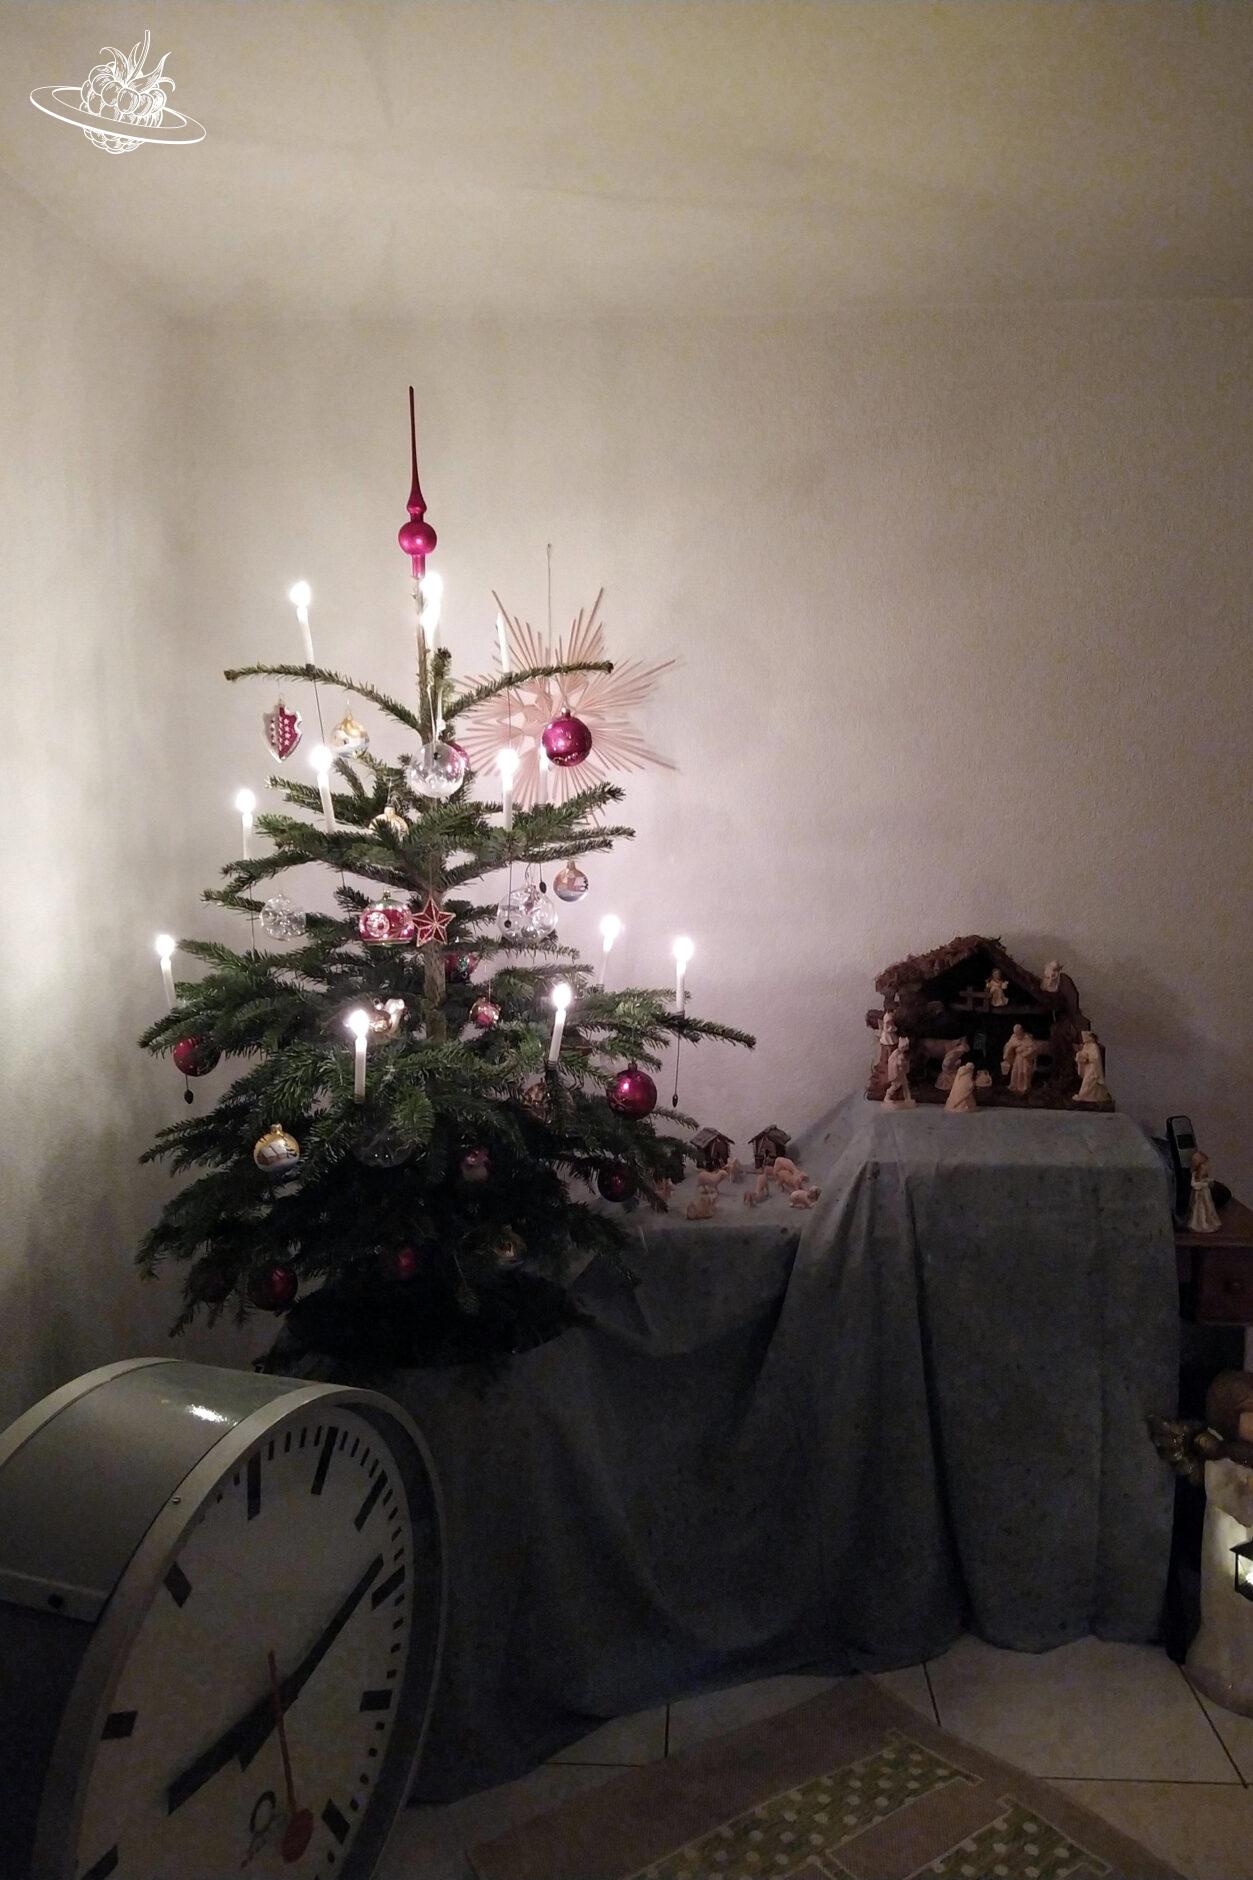 Weihnachtsbaum im Wohnzimmer